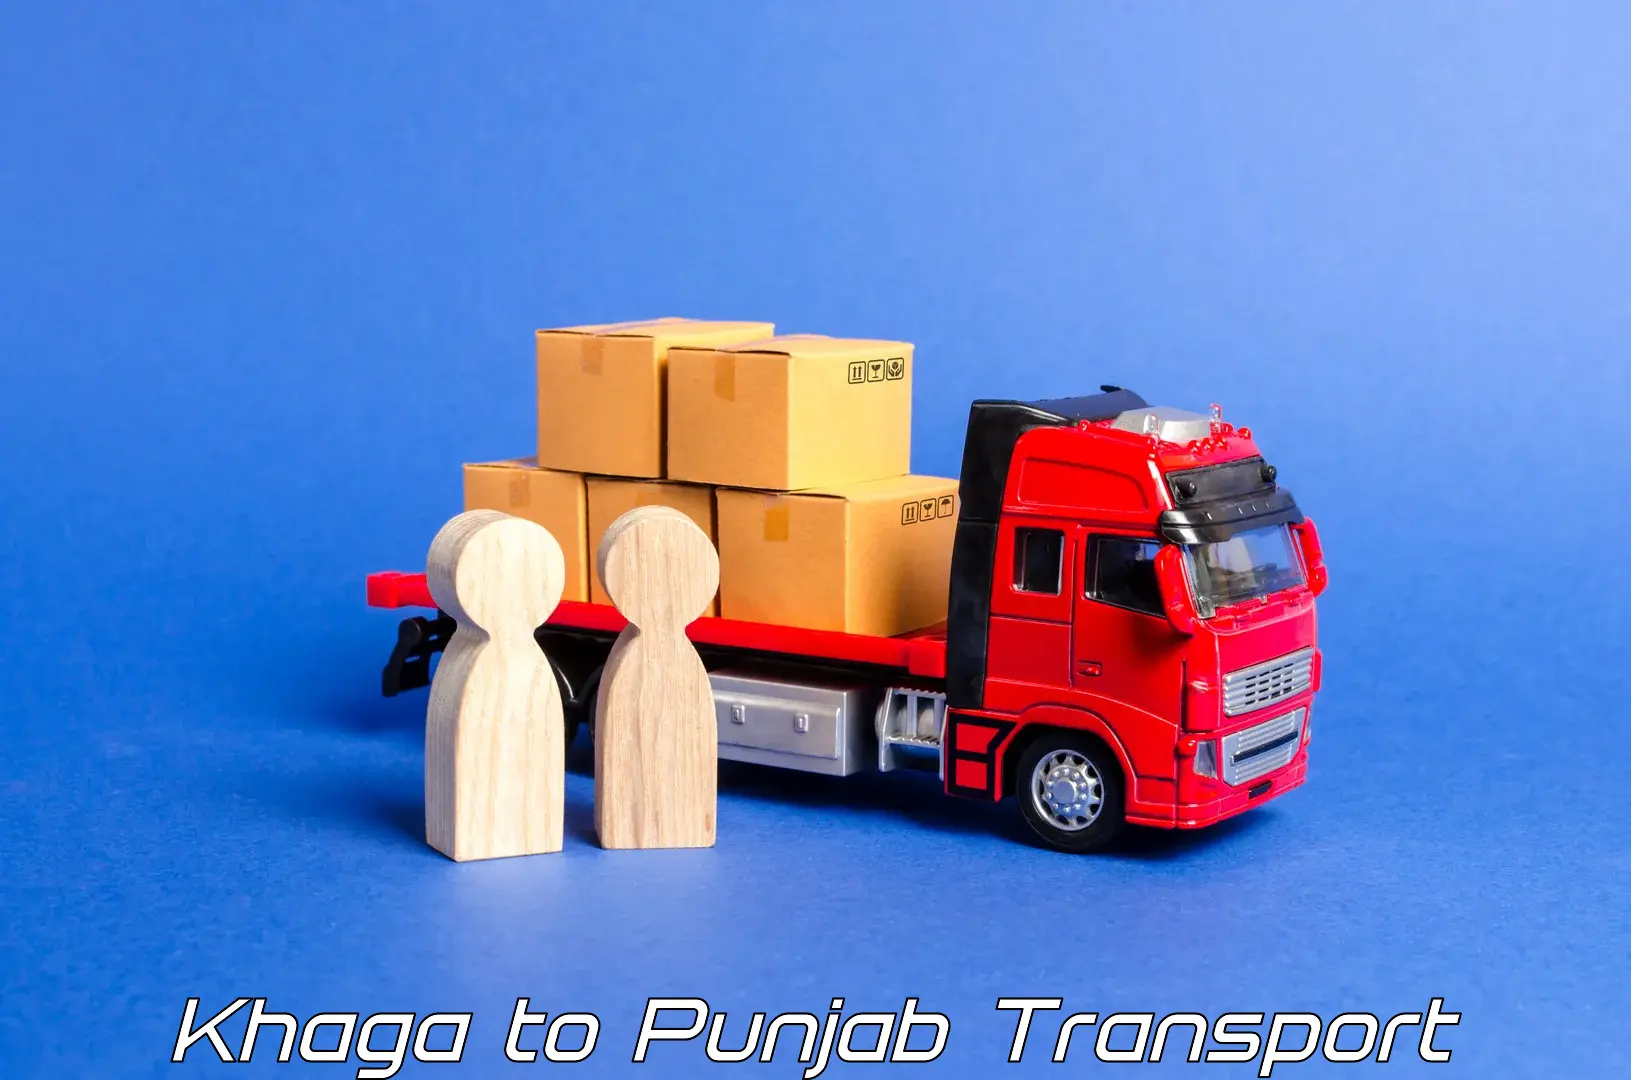 Shipping partner Khaga to Moga